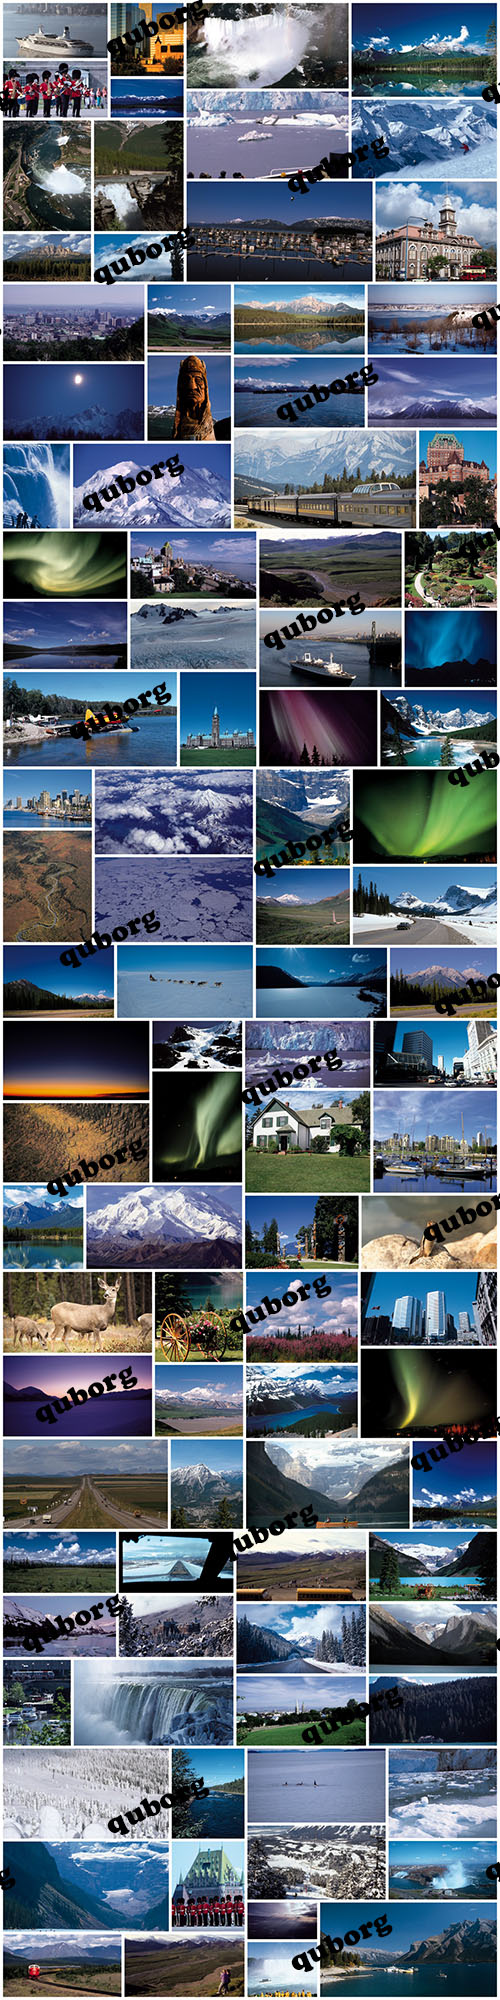 Stock Photos - Canada, Alaska